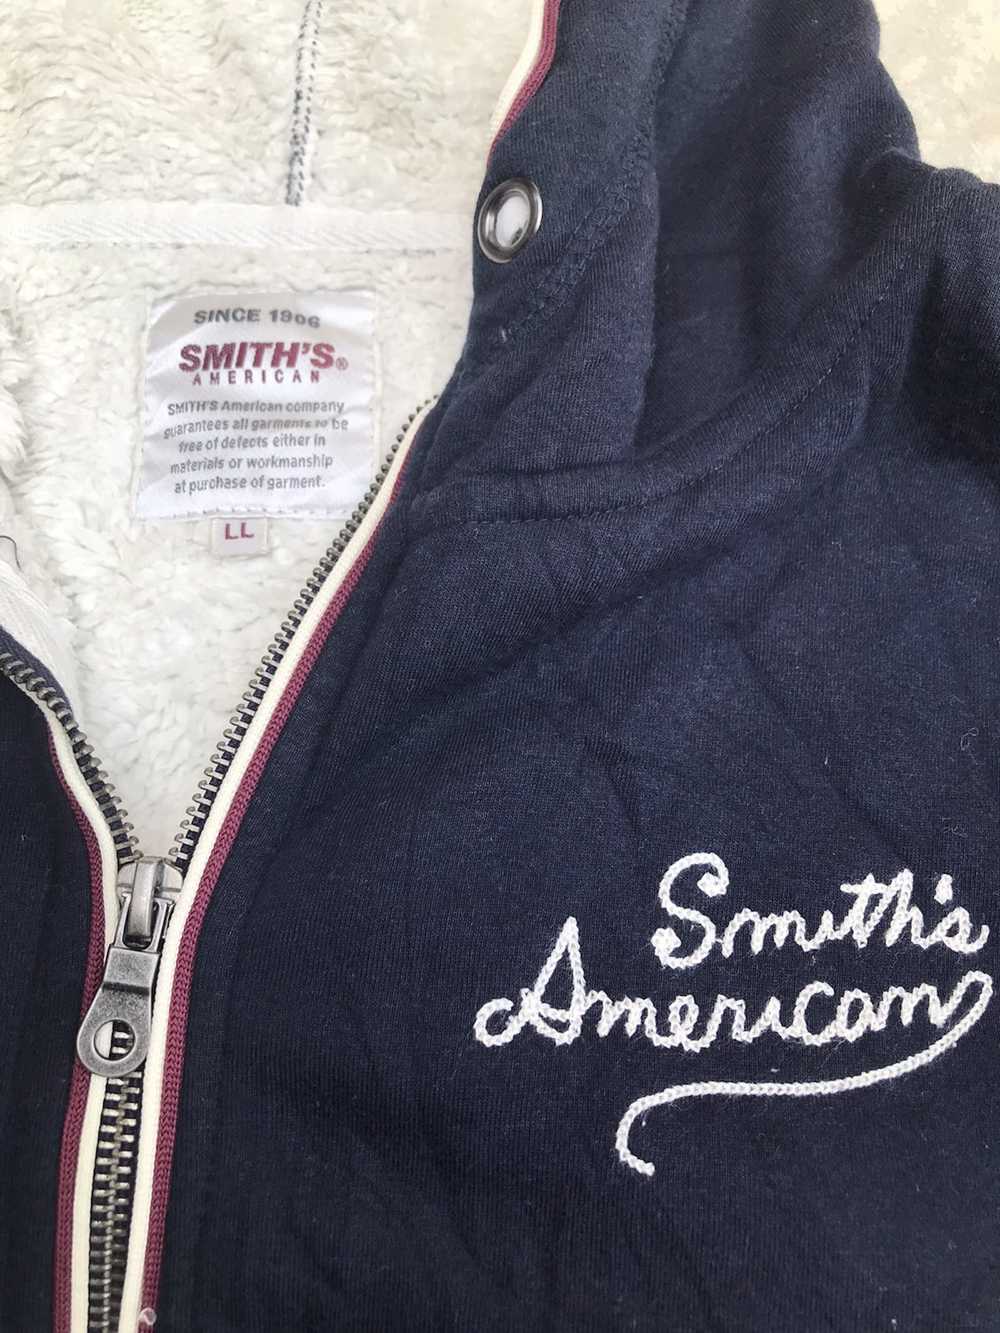 Smiths American × Vintage Vintage smiths american - image 2